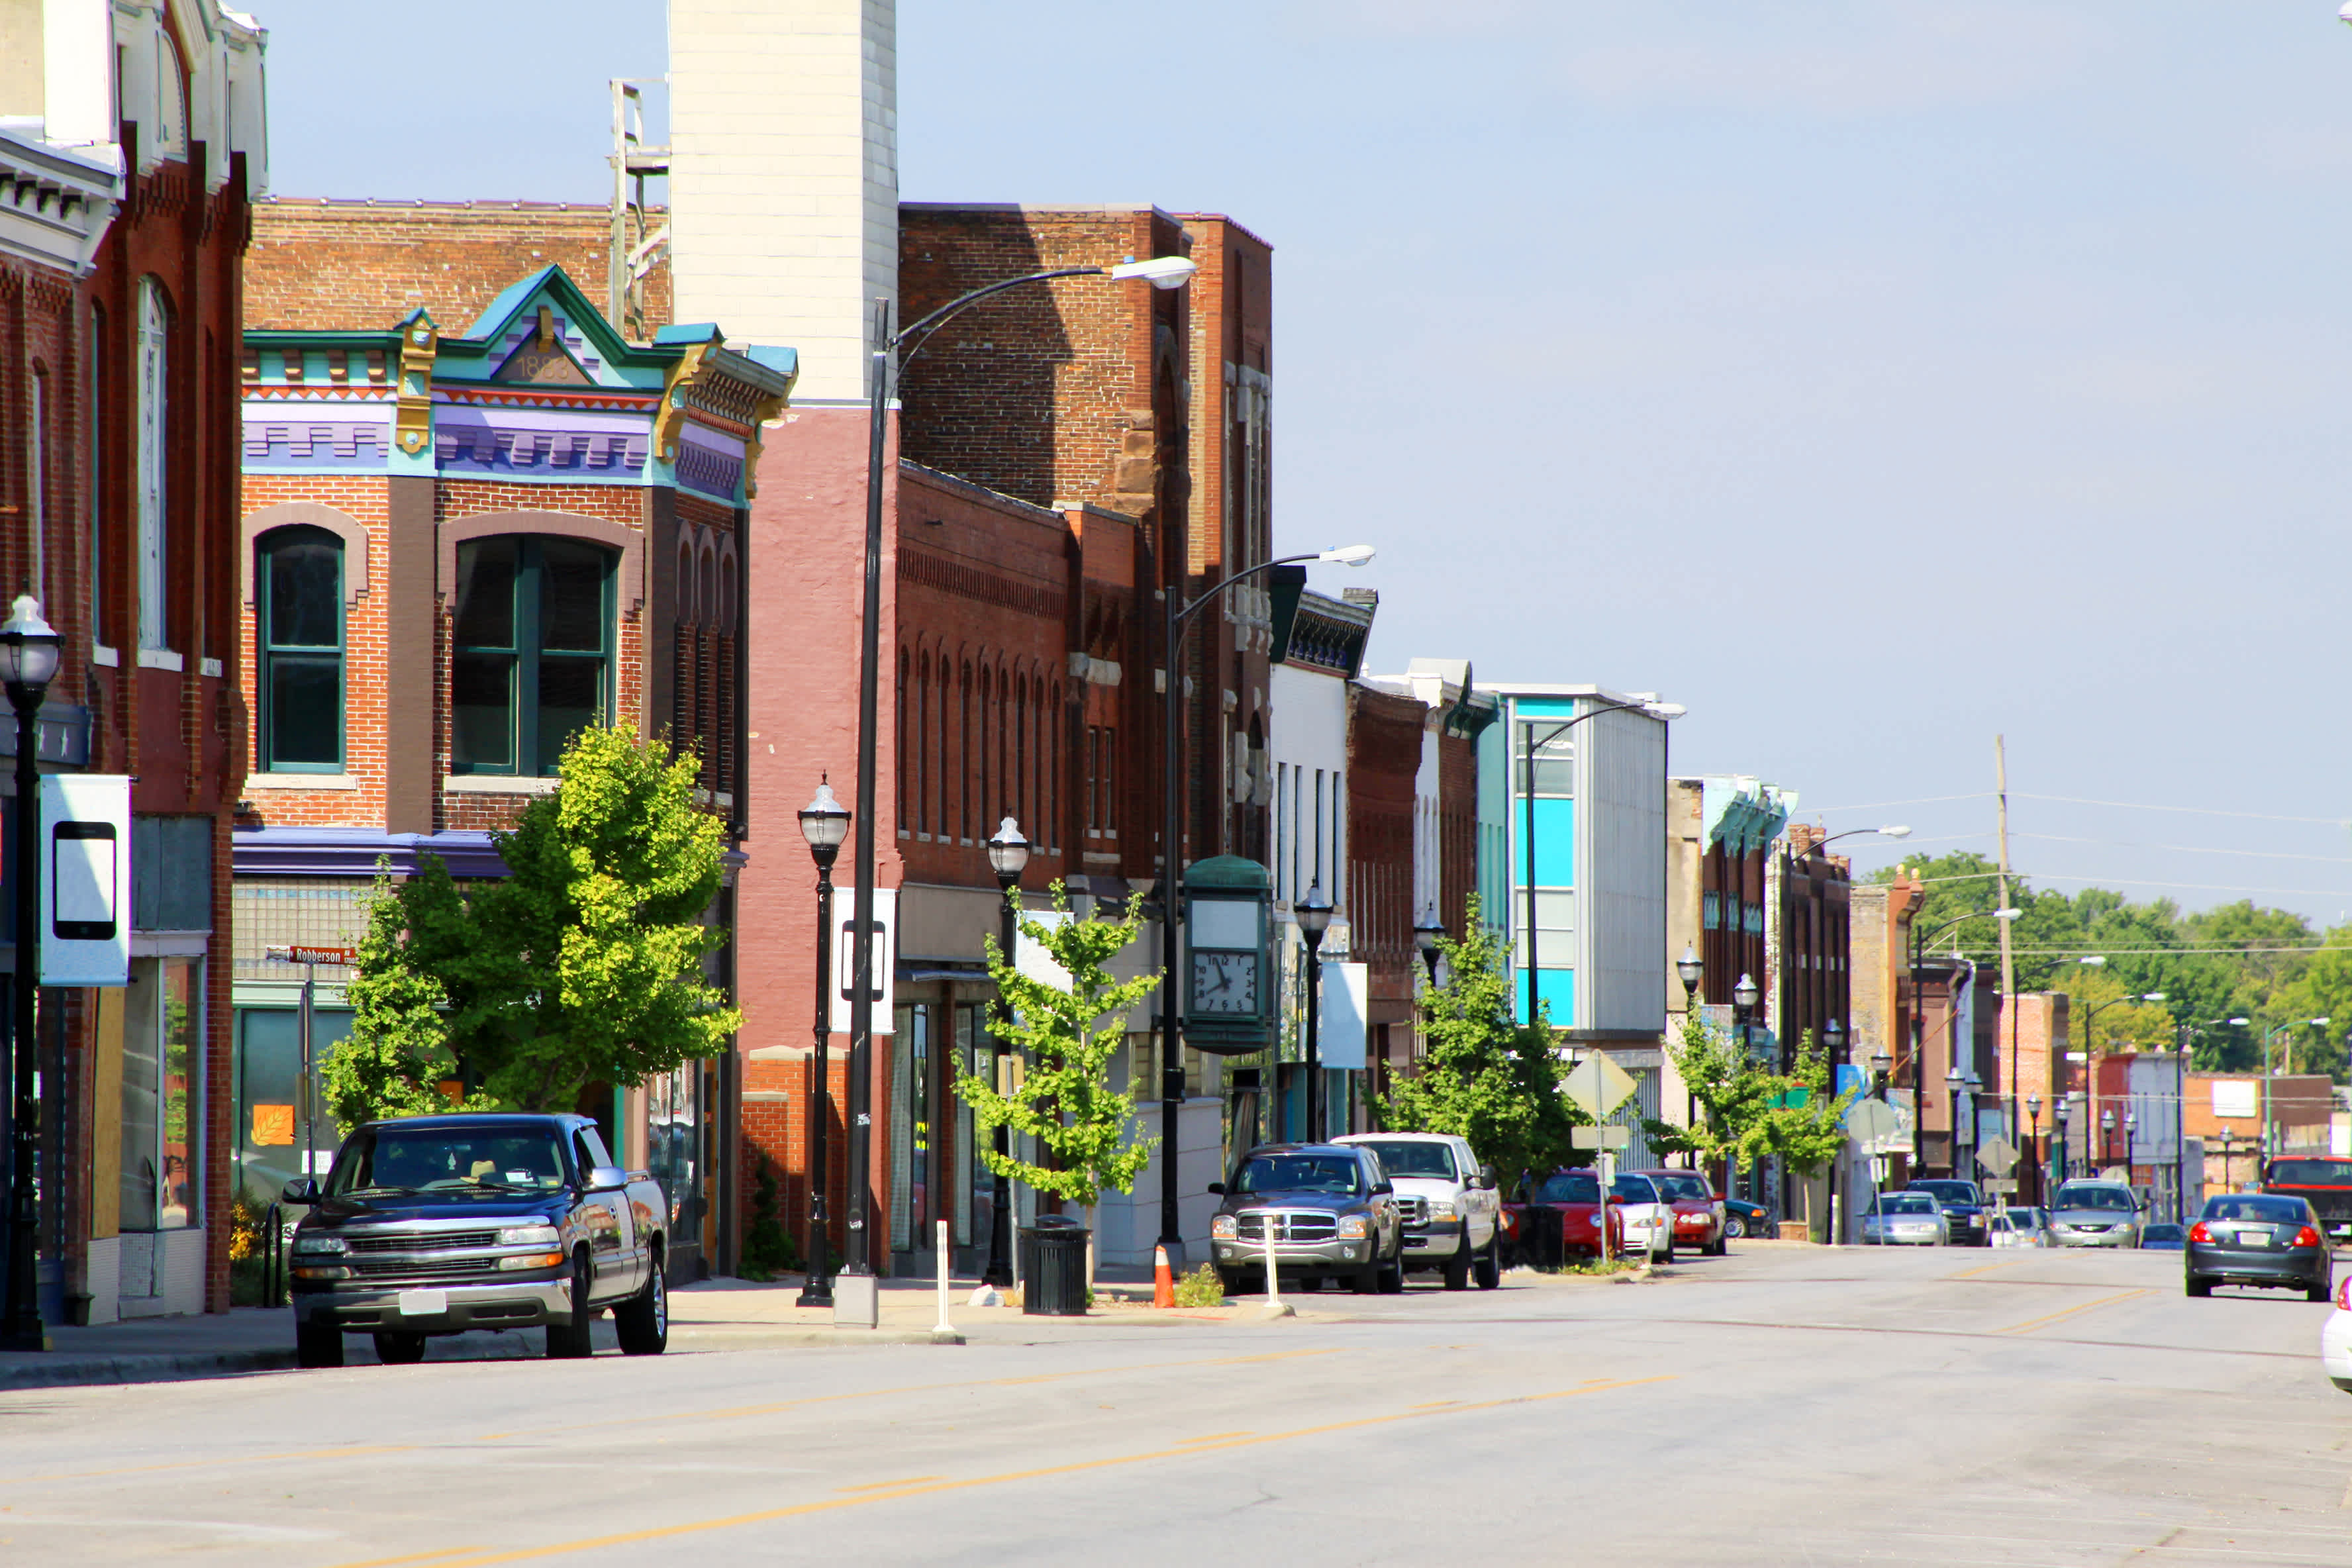 Historisches Stadtzentrum von Springfield, Missouri, USA.
